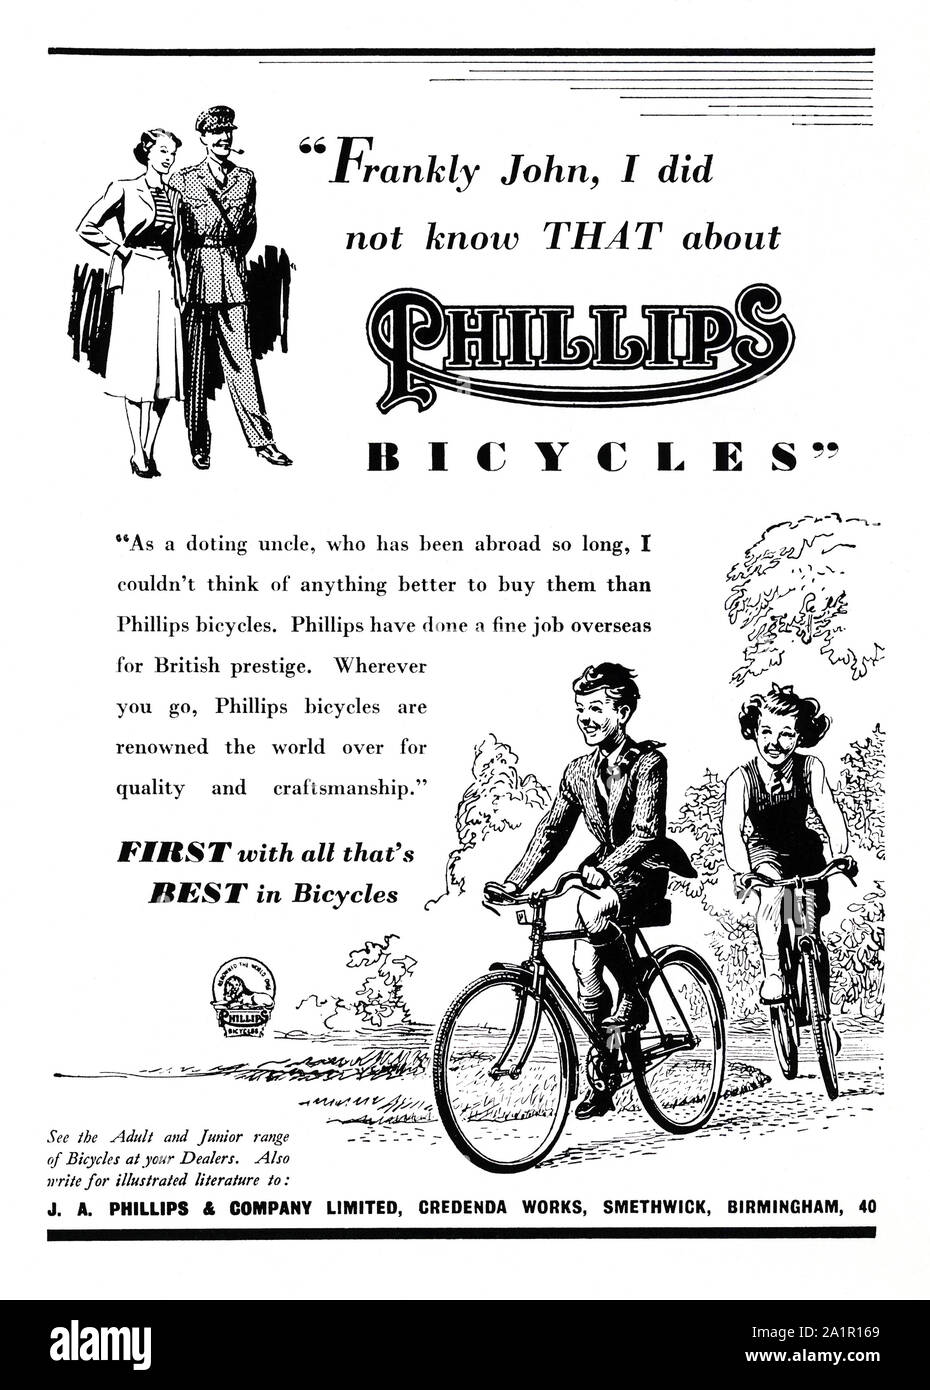 Anzeige für Phillips Zyklen, 1951. Die Abbildung zeigt die Kinder ihre  Fahrräder reiten mit Erwachsene auf der Suche. Phillips Zyklen Ltd. war ein britischer  Fahrradhersteller in Smethwick in der Nähe von Birmingham,